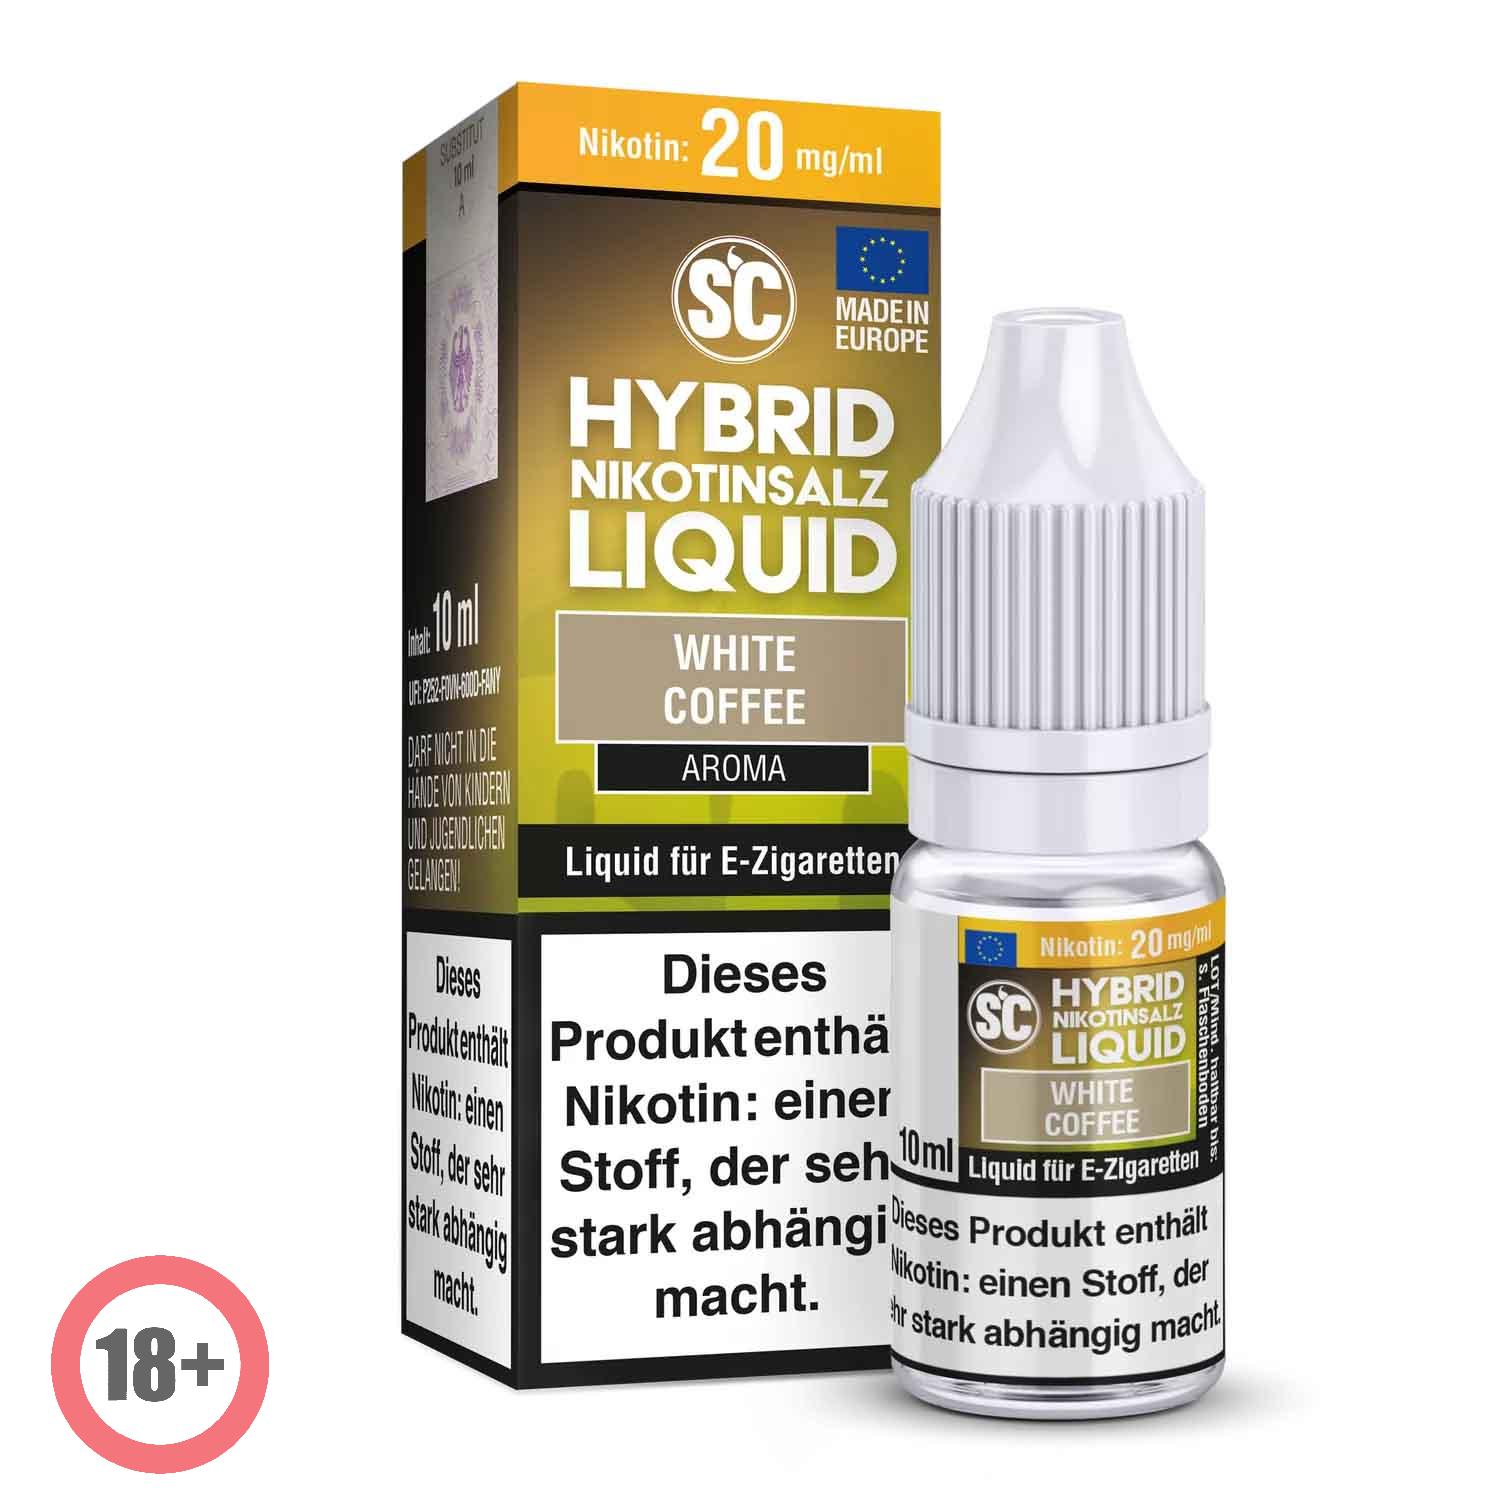 SC - White Coffee Hybrid Nikotinsalz Liquid ✅ Günstig kaufen! 